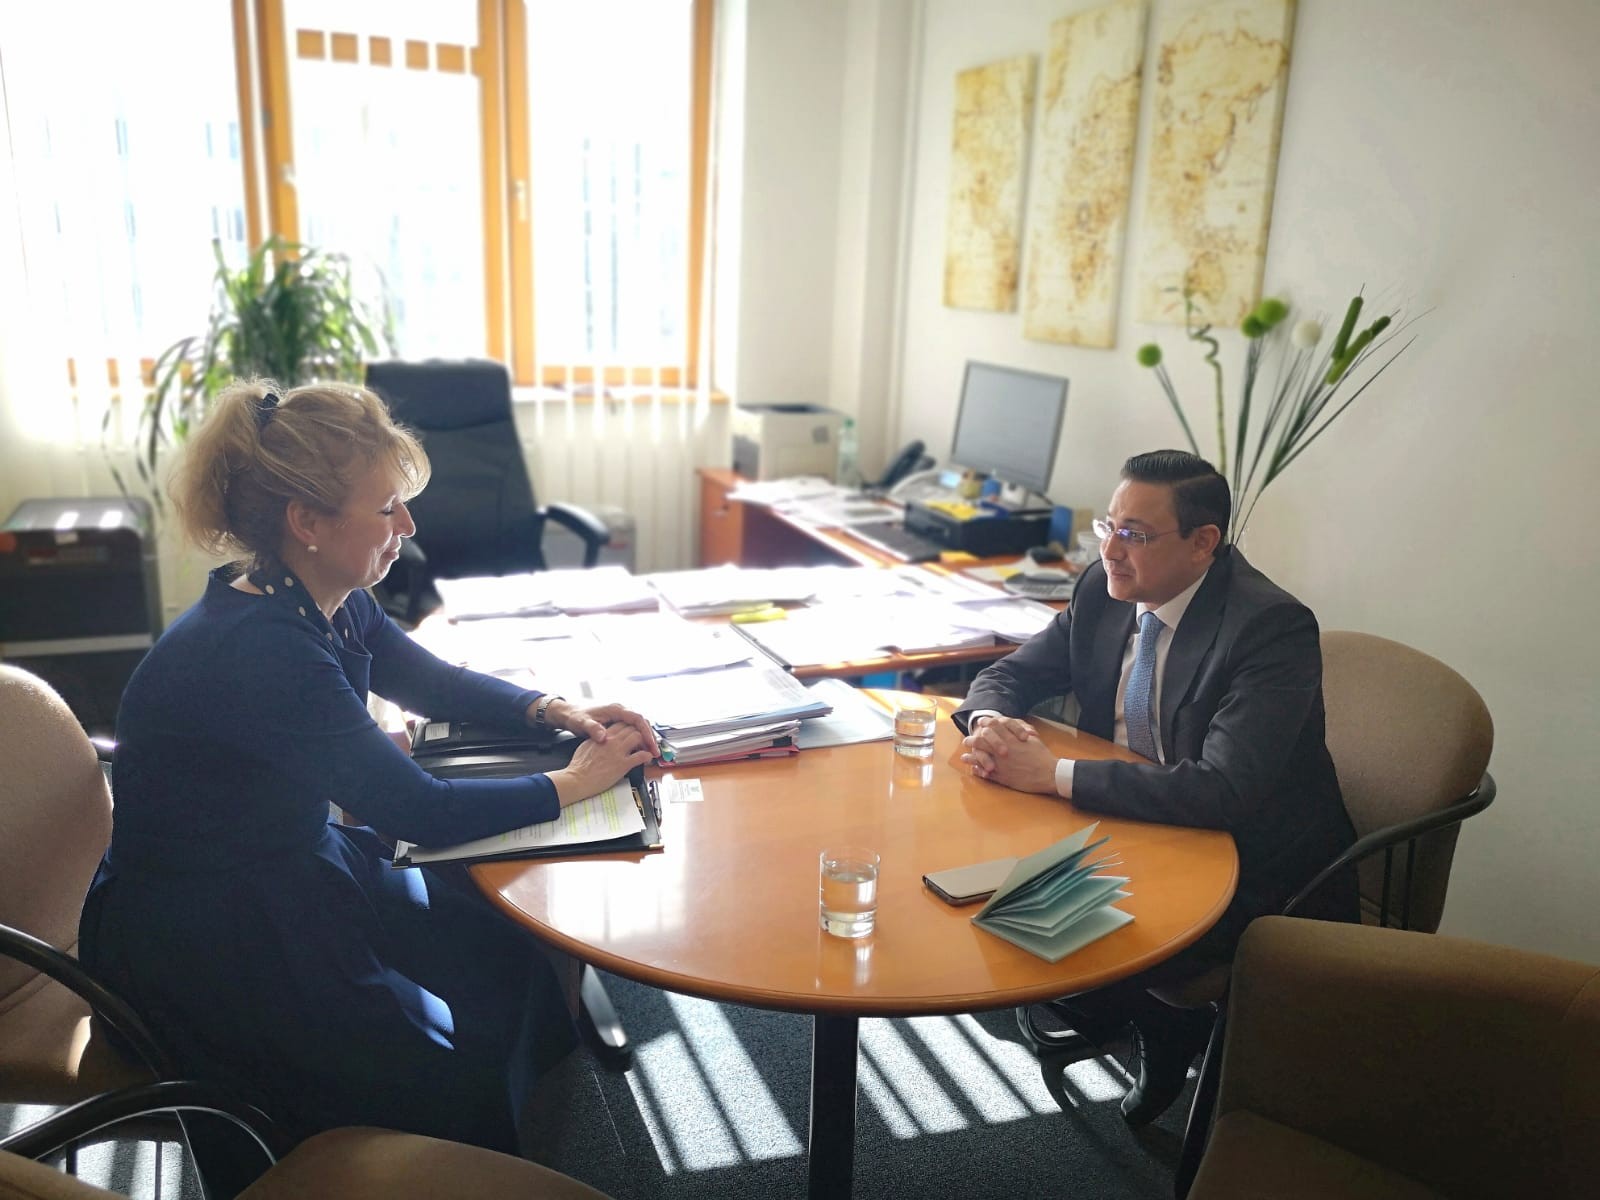 السفير شجاع يلتقي مسئول سلوفاكي والأخير يؤكد بلاده لجهود إحلال السلام في اليمن